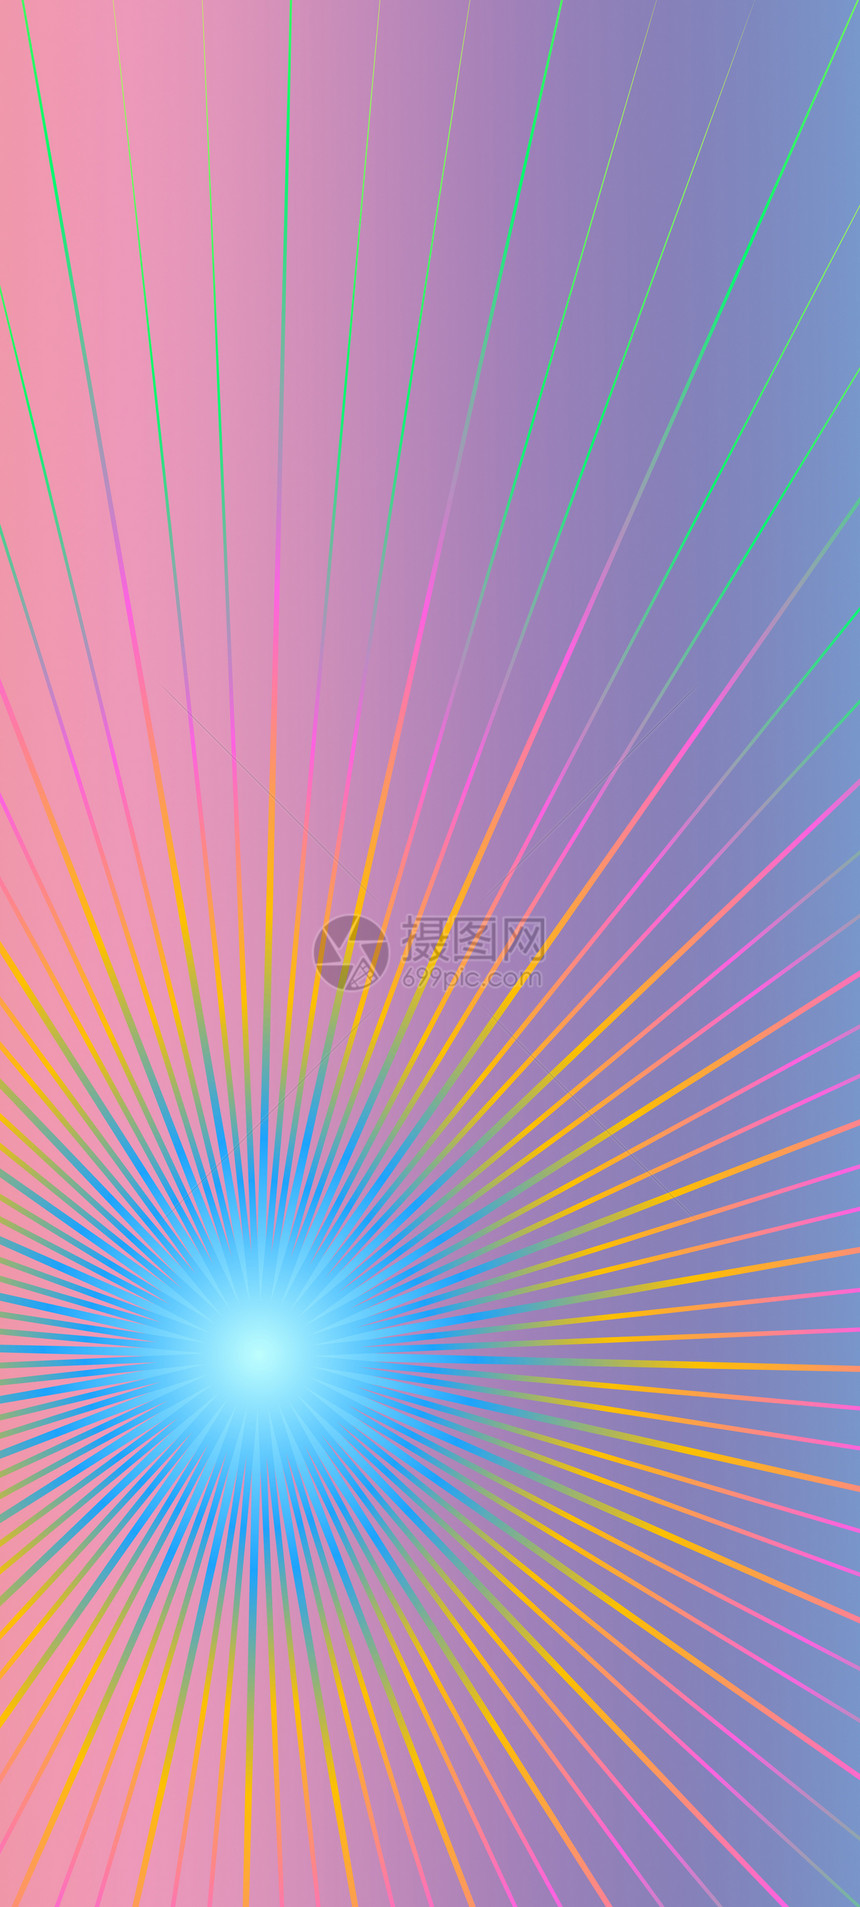 摘要肖像青色紫色太阳圆形横梁射线运动活力线条粉色图片